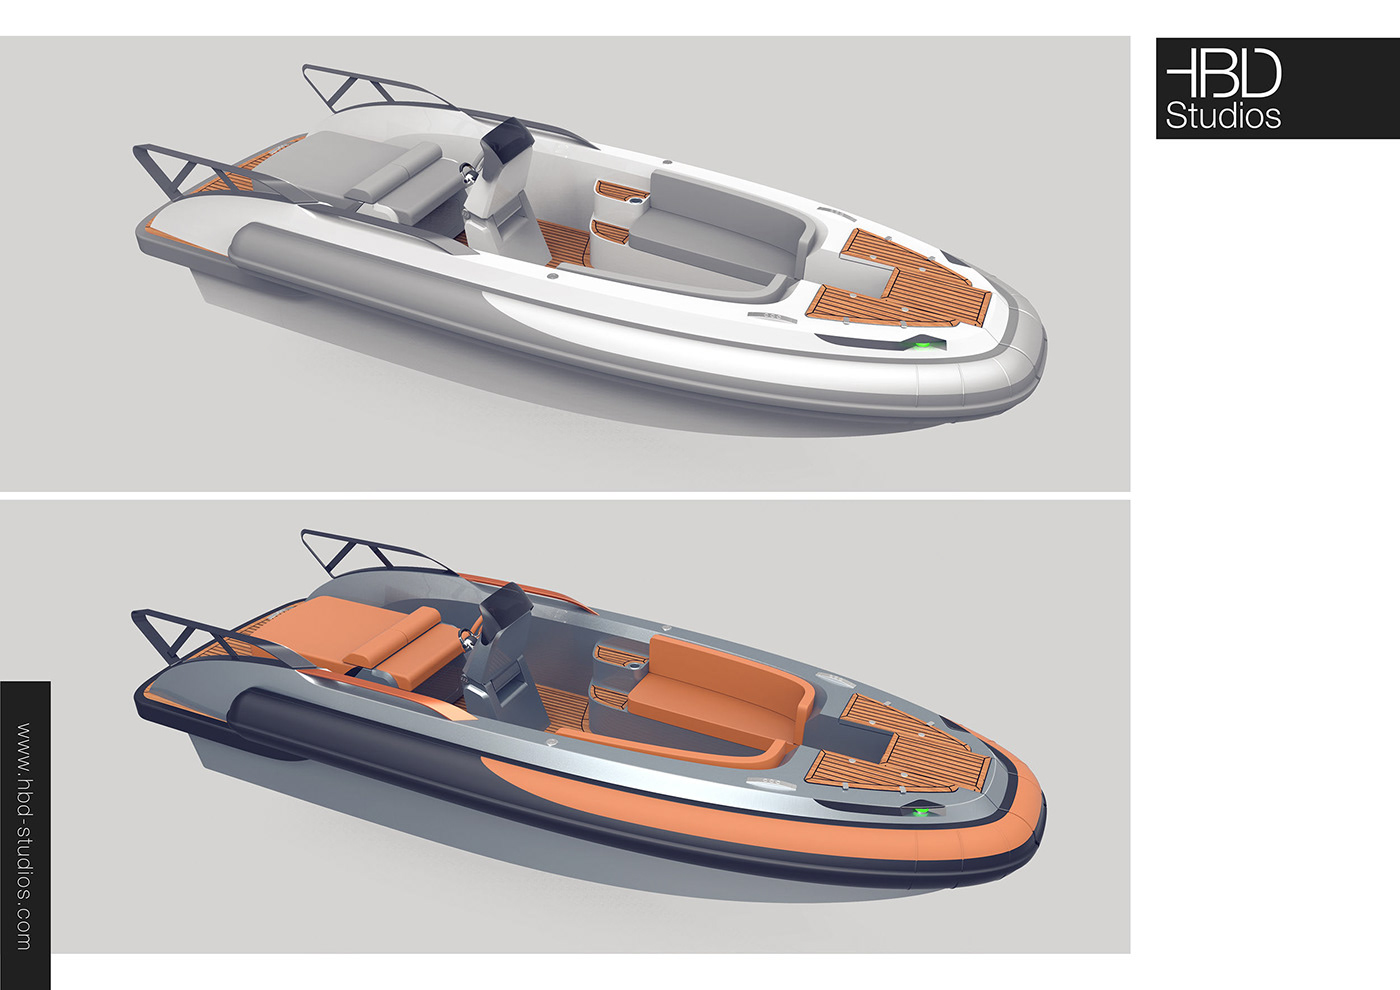 Yacht Design Automotive design industrial design  product design  Alias keyshot car design 3d modeling rendering concept design